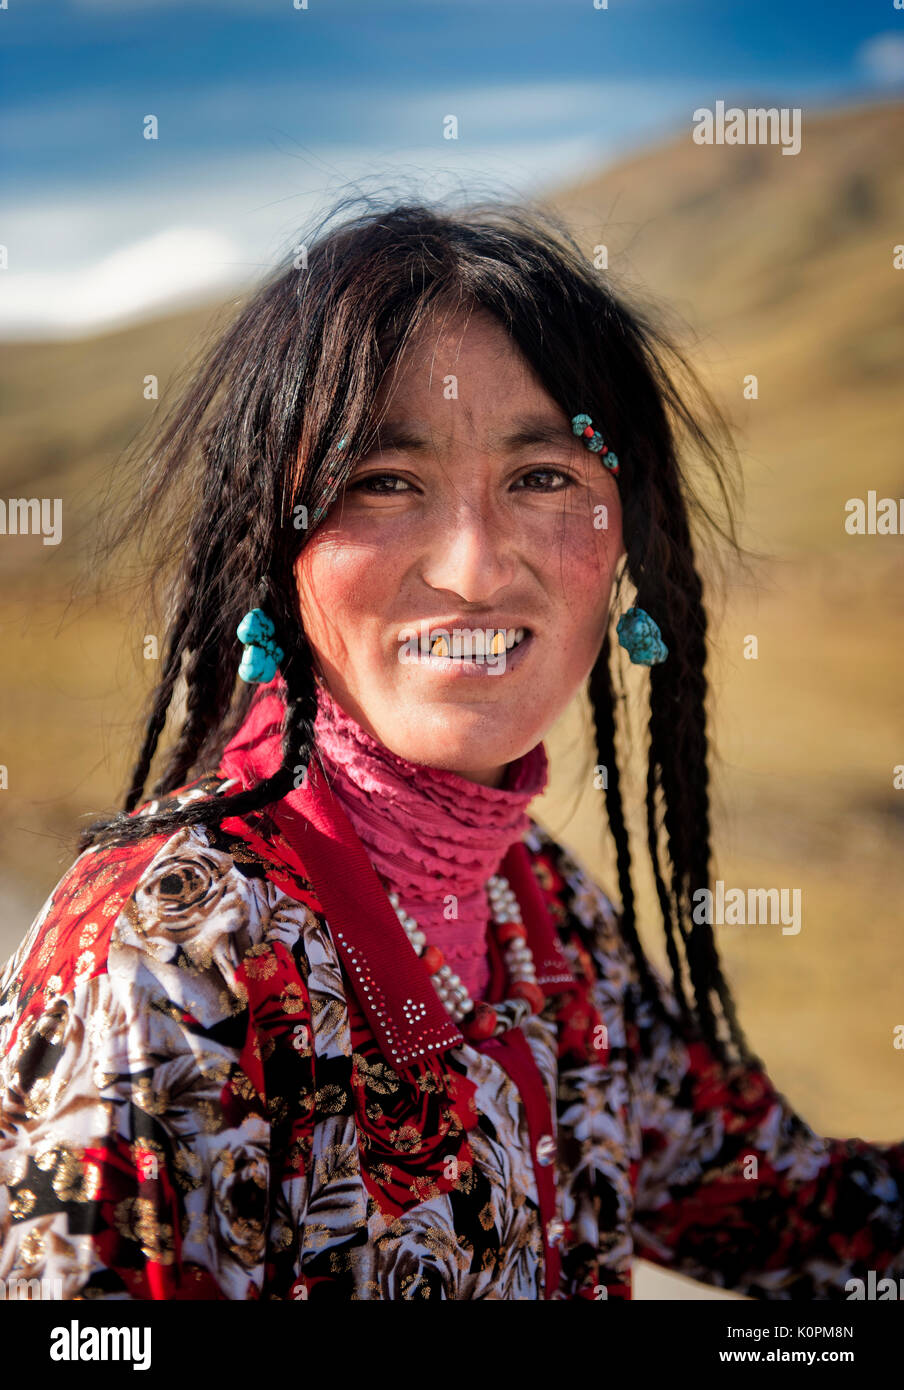 Ein tibetischer Junge Frau das Tragen der traditionellen Zubehör typisch für ihre ethnische Gruppe sowie ihre Fangzähne in Gold bedeckt, Remote tibetischen Plateau Stockfoto